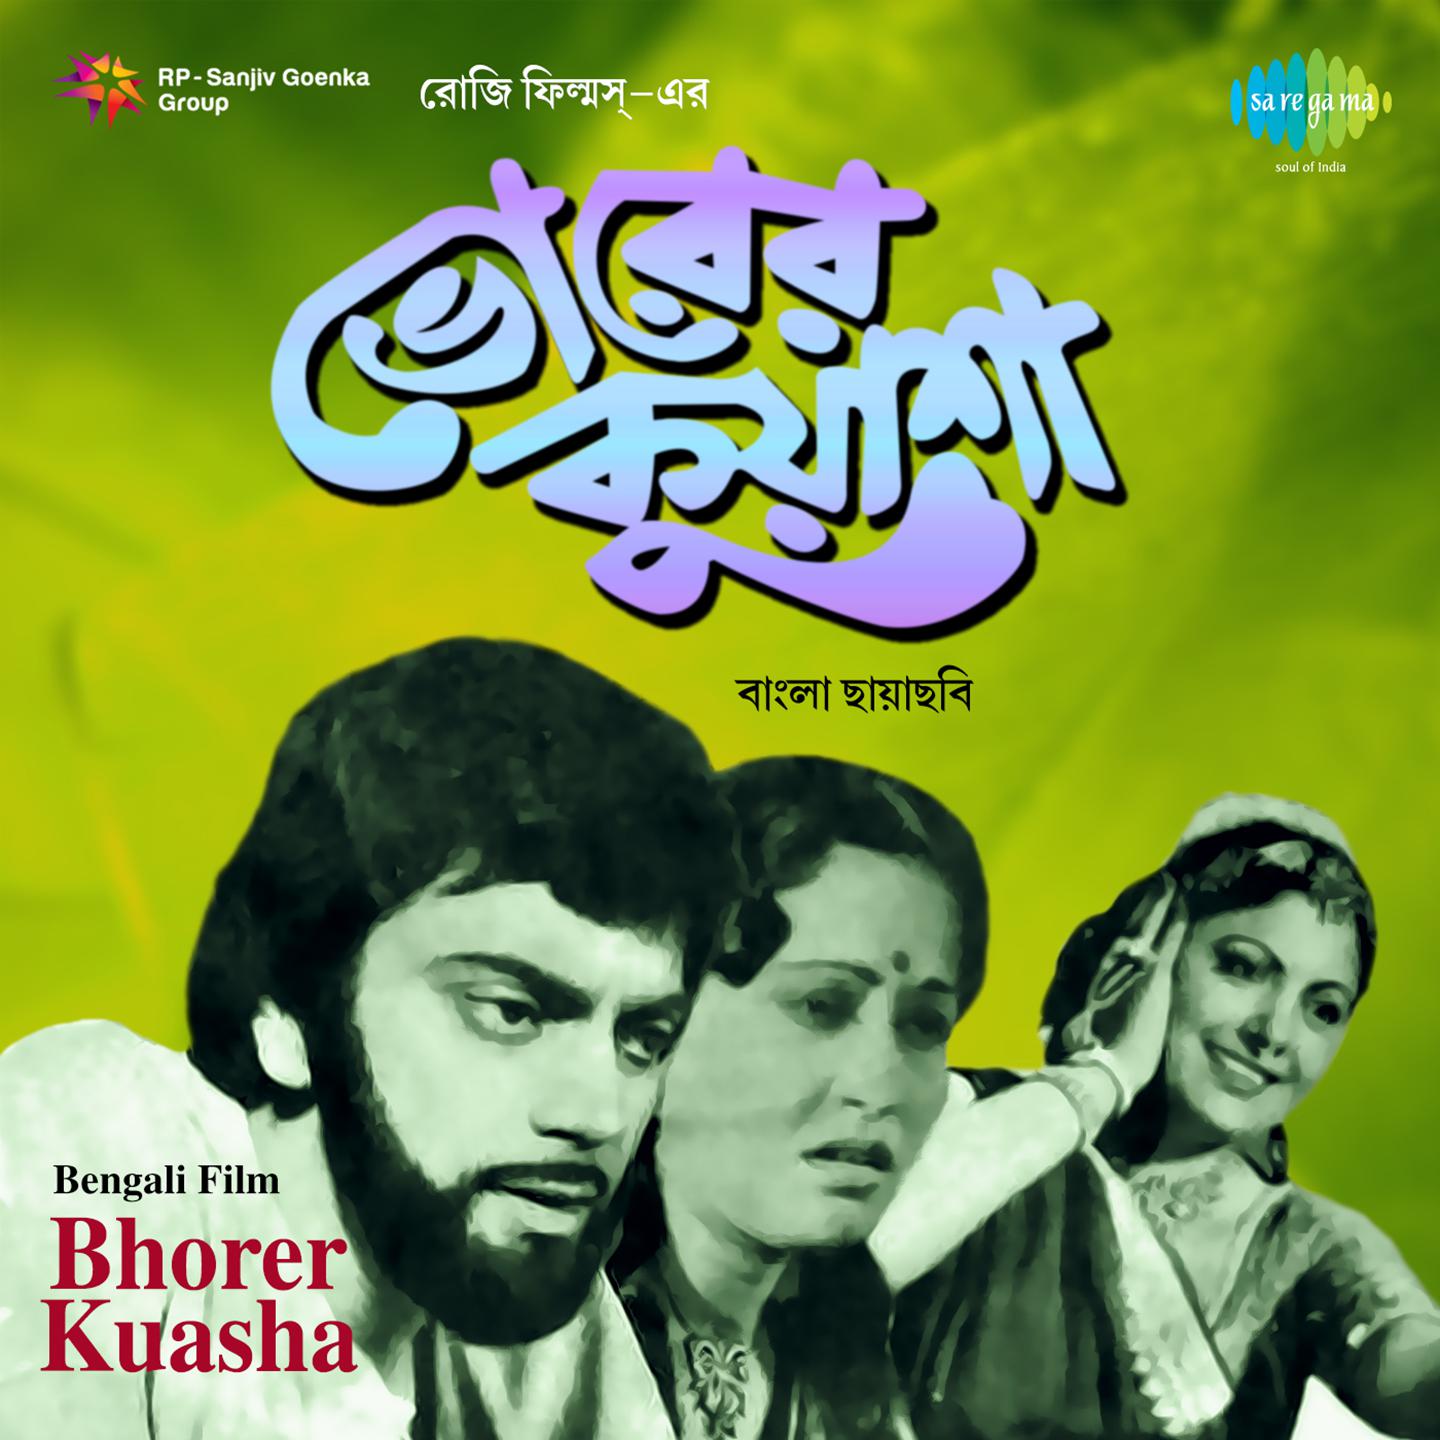 Bhorer Kuasha